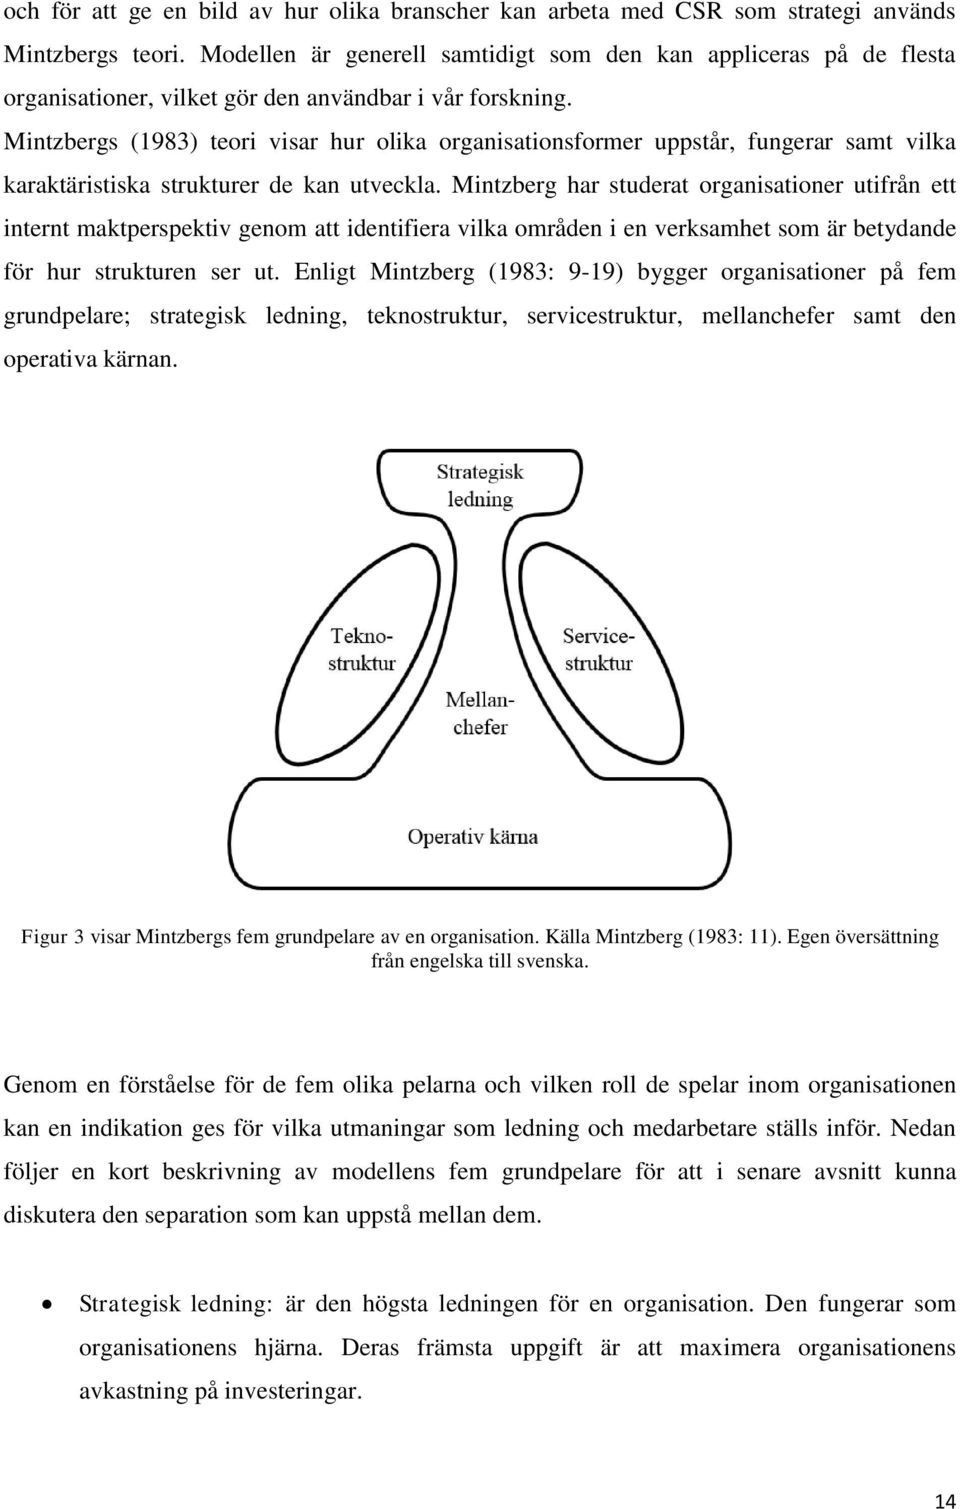 Mintzbergs (1983) teori visar hur olika organisationsformer uppstår, fungerar samt vilka karaktäristiska strukturer de kan utveckla.